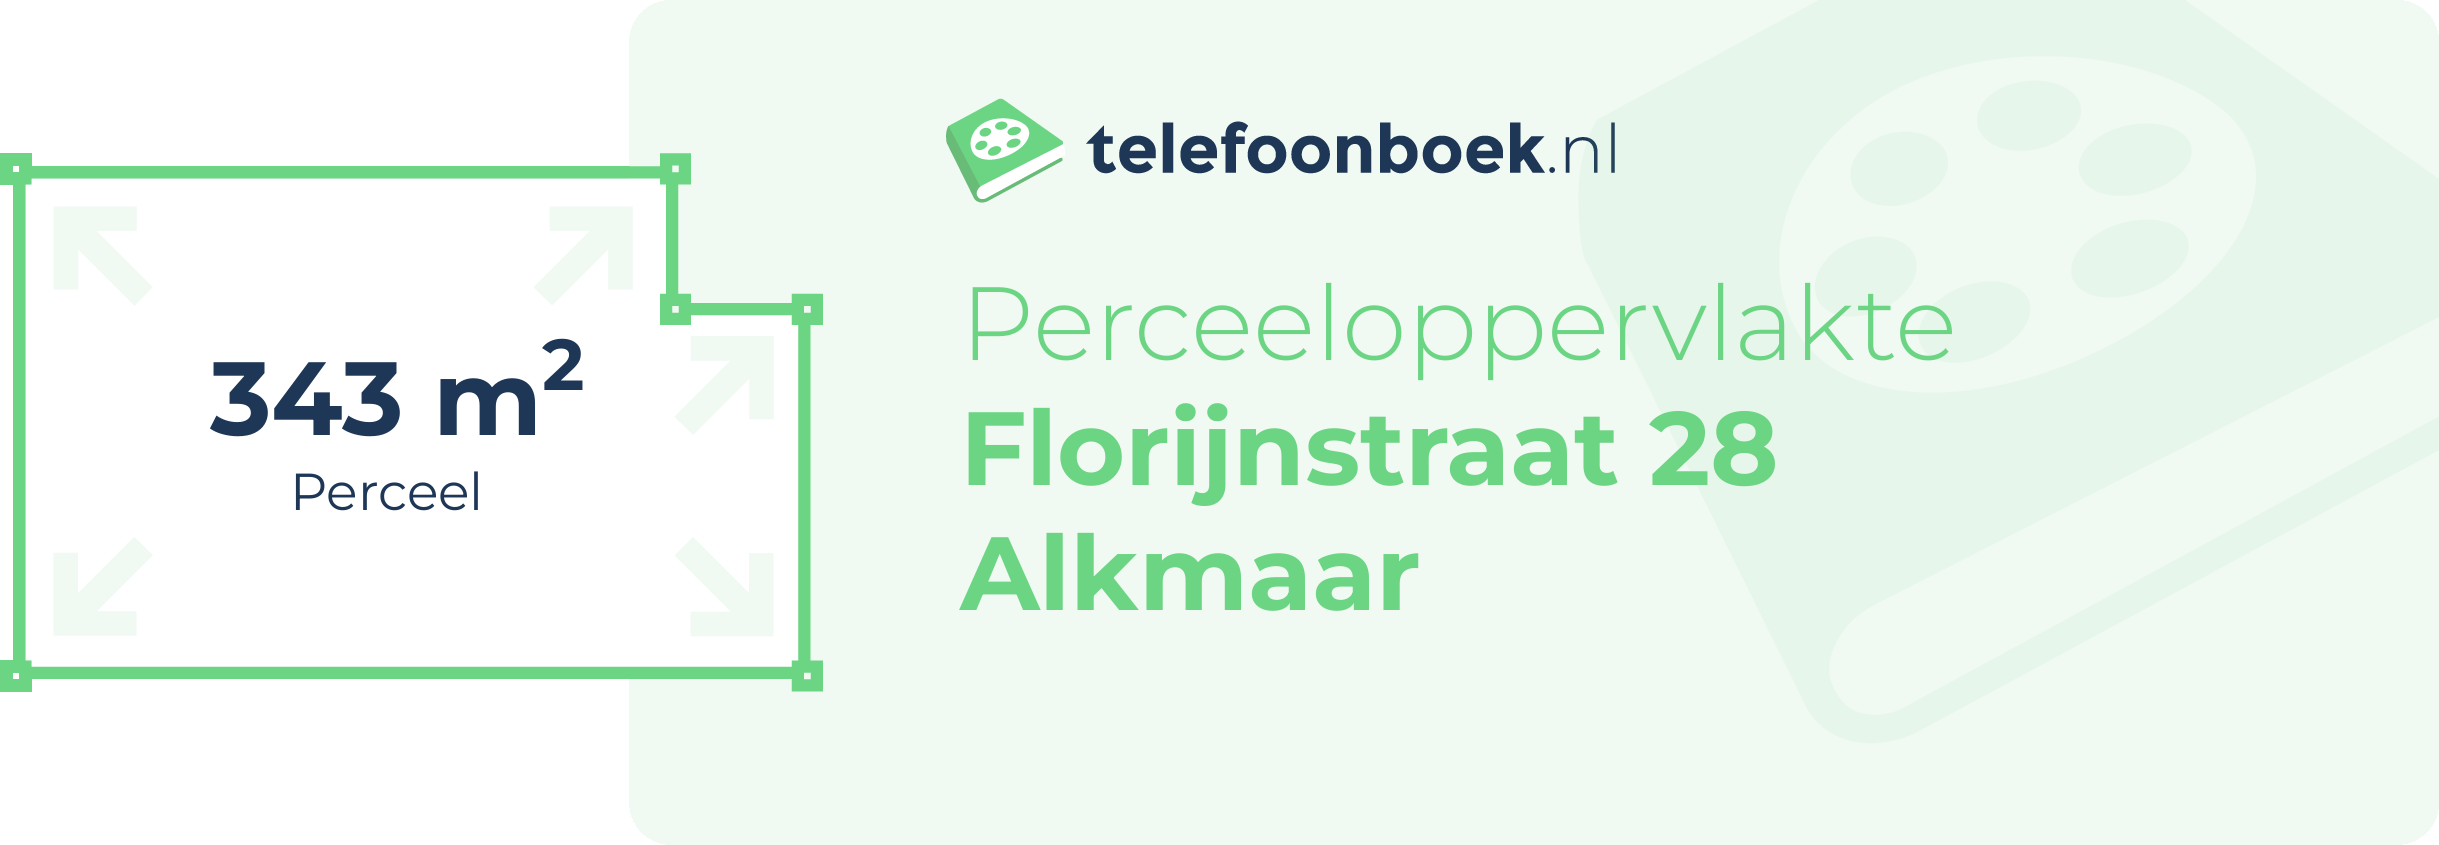 Perceeloppervlakte Florijnstraat 28 Alkmaar